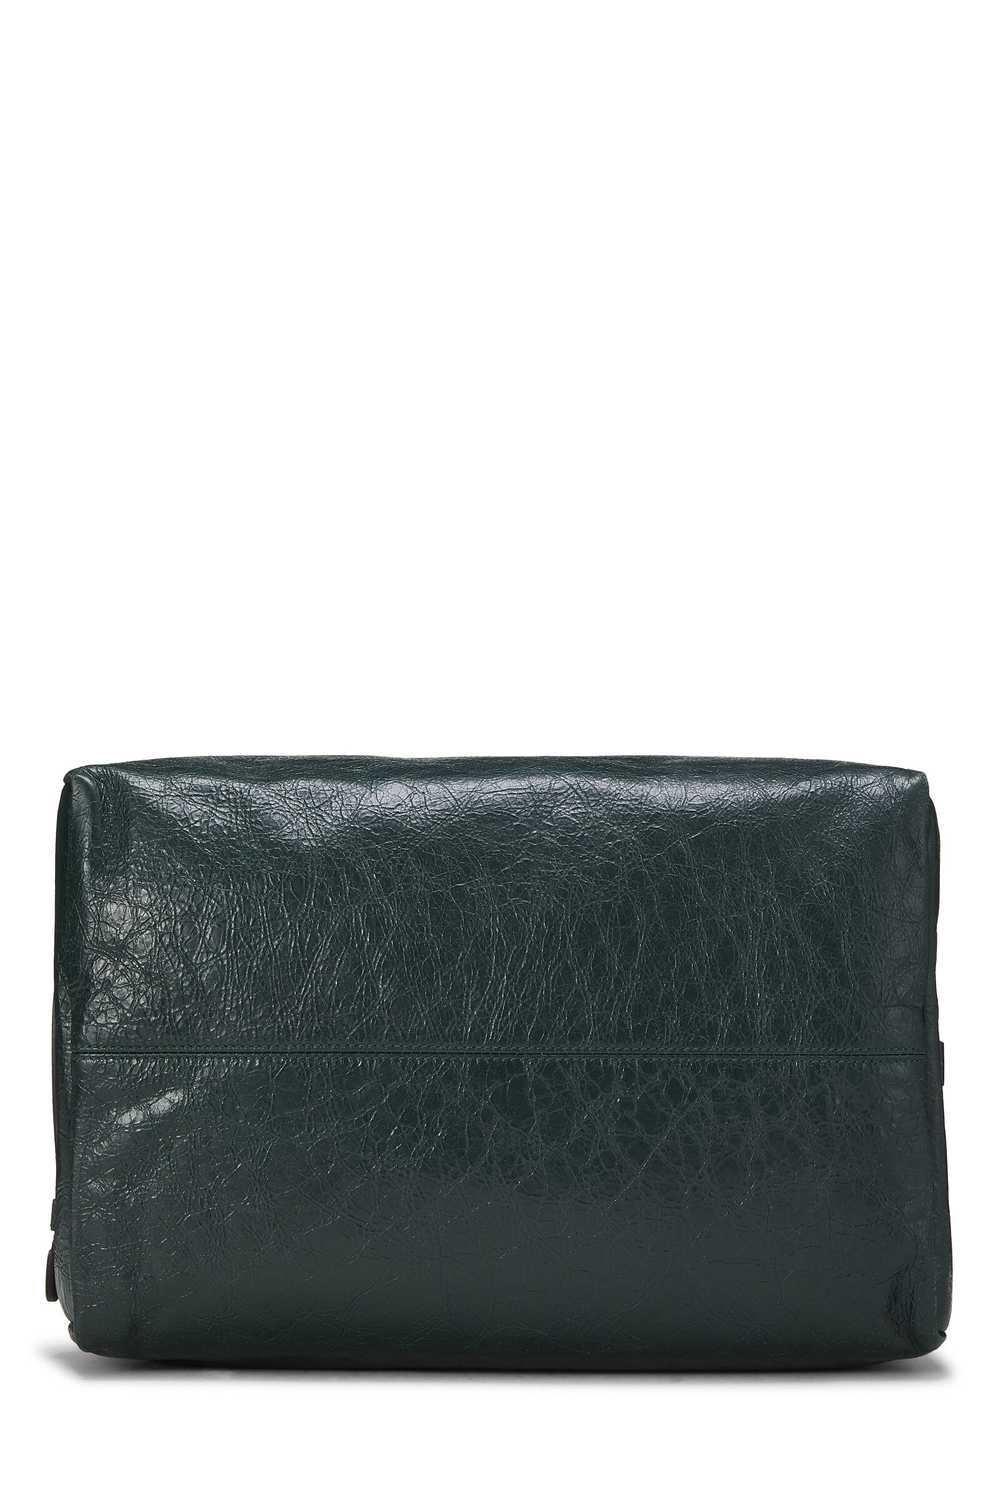 Black Leather Soft Backpack - image 9